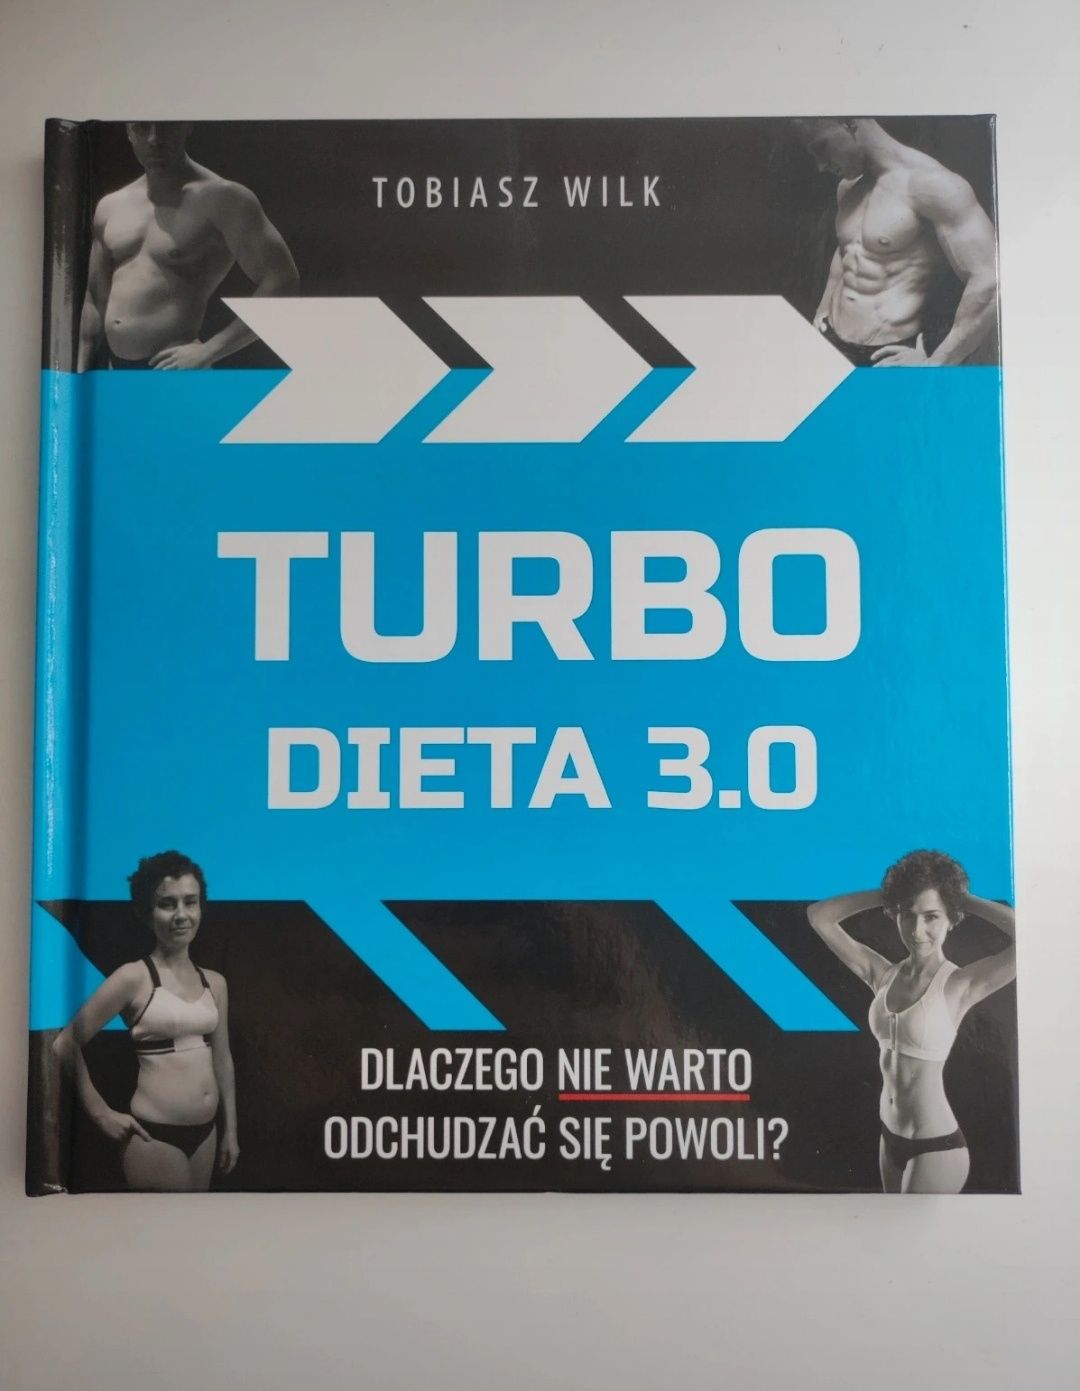 Dieta turbo 3.0 przepisy 2xme